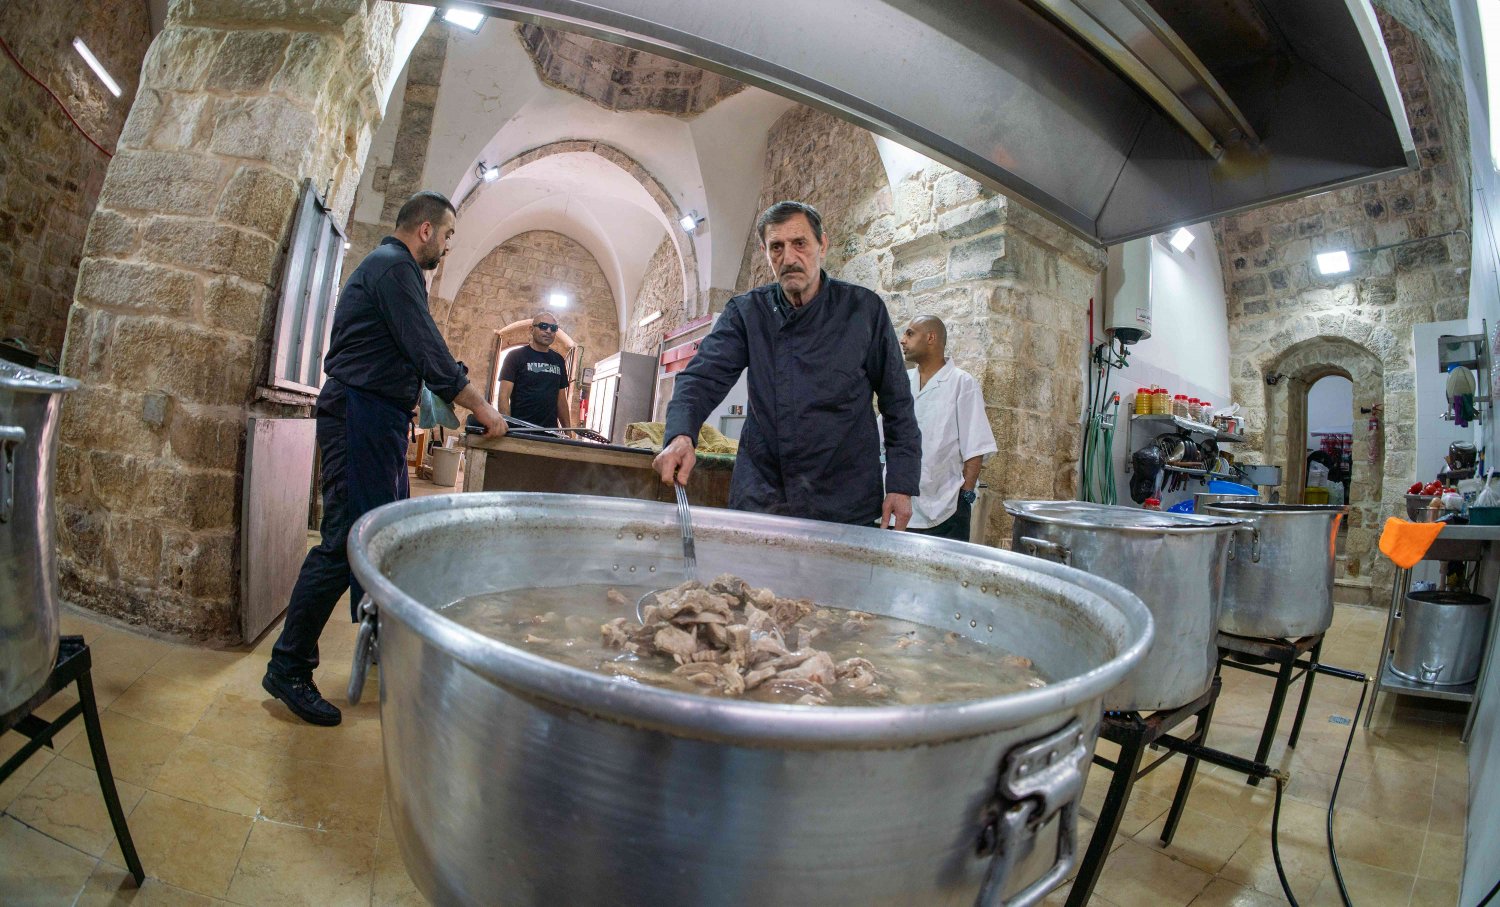 Samir Jaber prepares the lamb for mansaf in the Khaski Sultan soup kitchen in the Old City of Jerusalem 